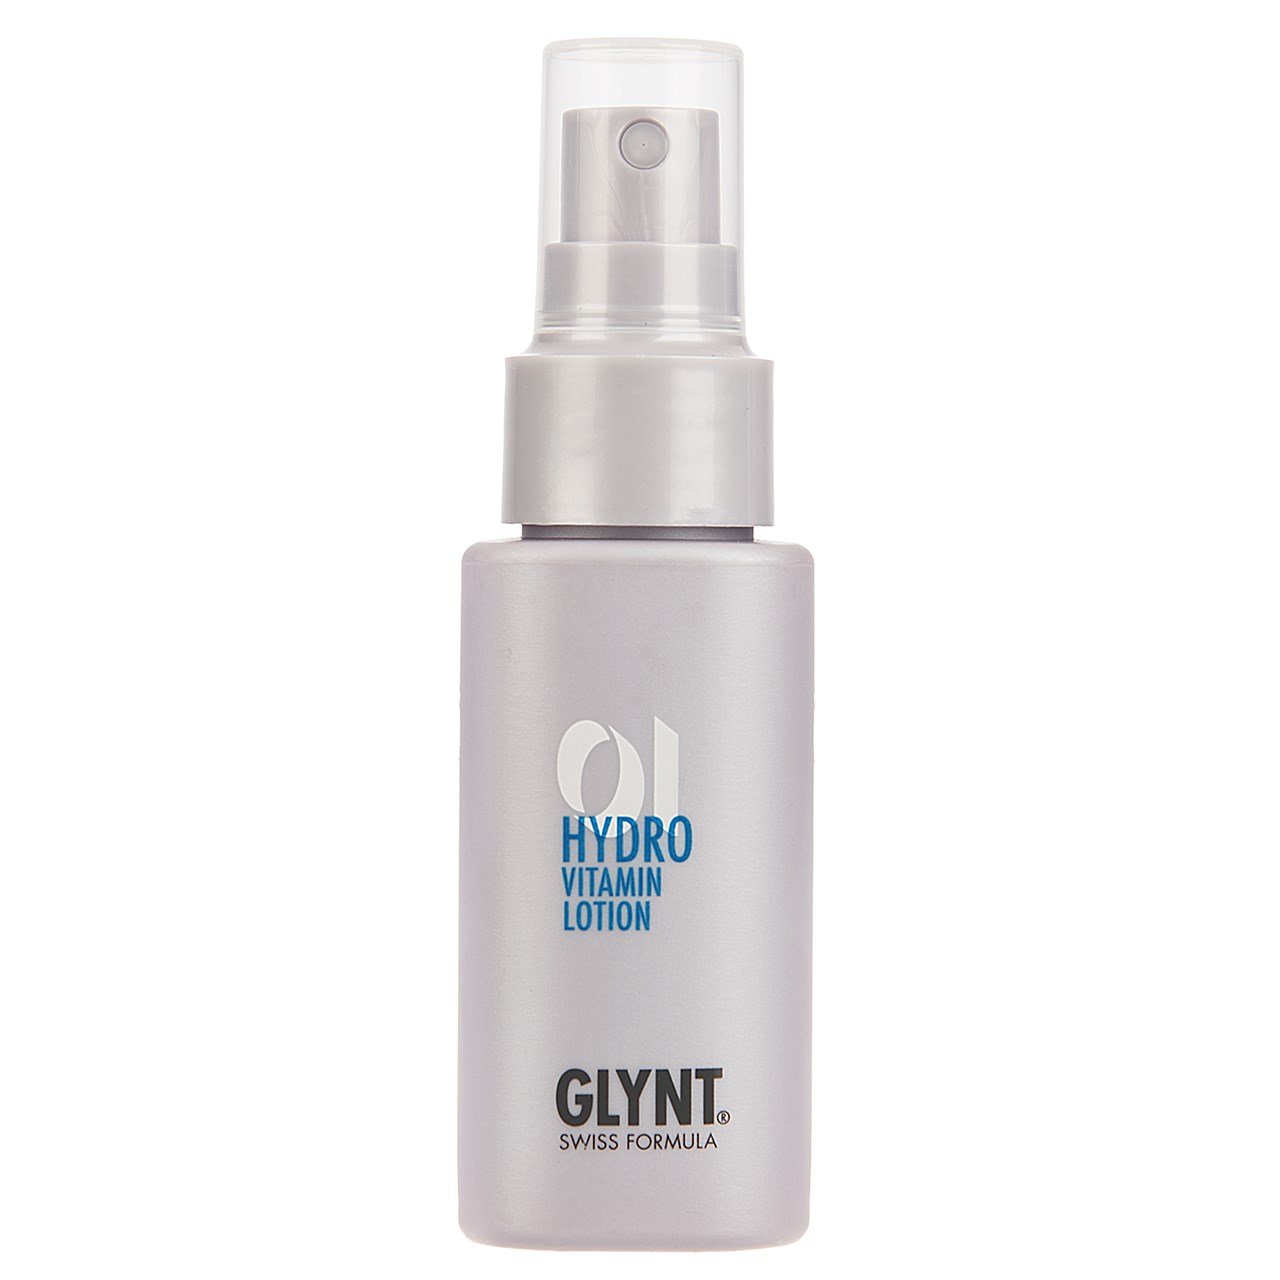 لوسیون نرم کننده مو گلینت مدل Hydro Vitamin Rinse 01 حجم 50 میلی لیتر